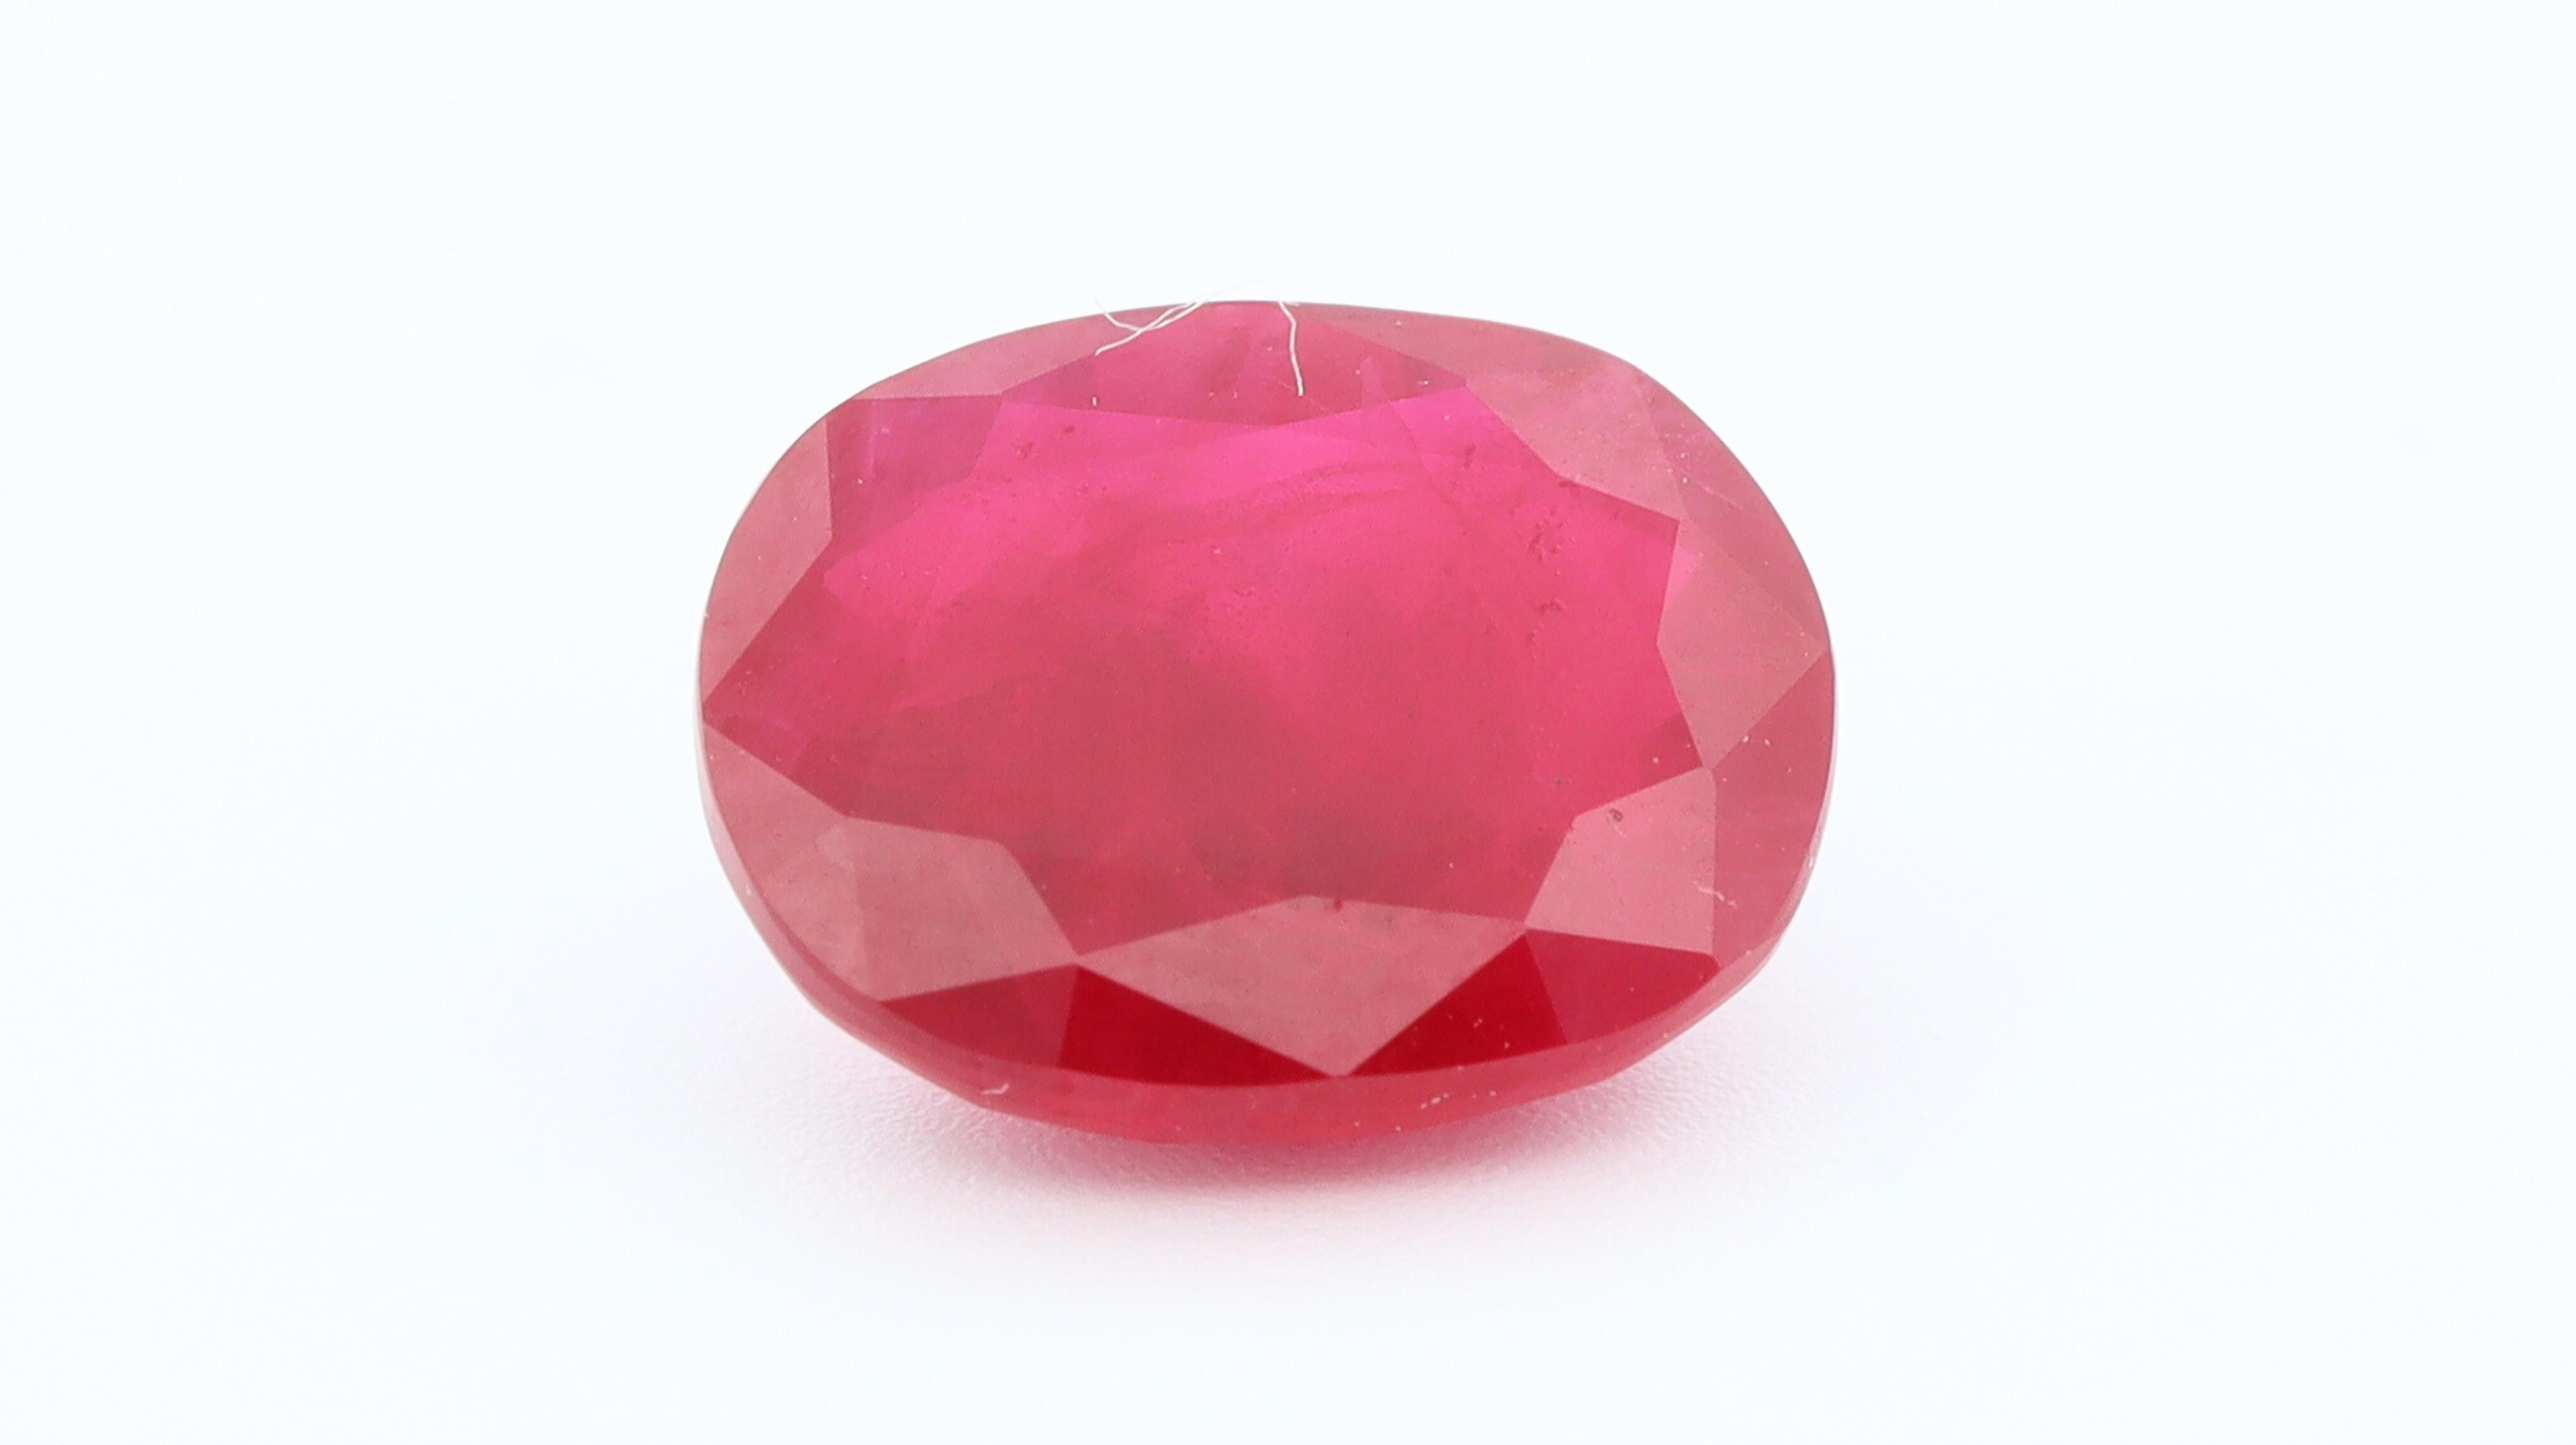 Le rubis est la variété rouge du minéral corindon, composé d'aluminium et d'oxygène (Al2O3), et c'est la présence de chrome qui donne à cette pierre la couleur rouge tant désirée. 
Sa présence peut également provoquer une fluorescence naturelle, ce